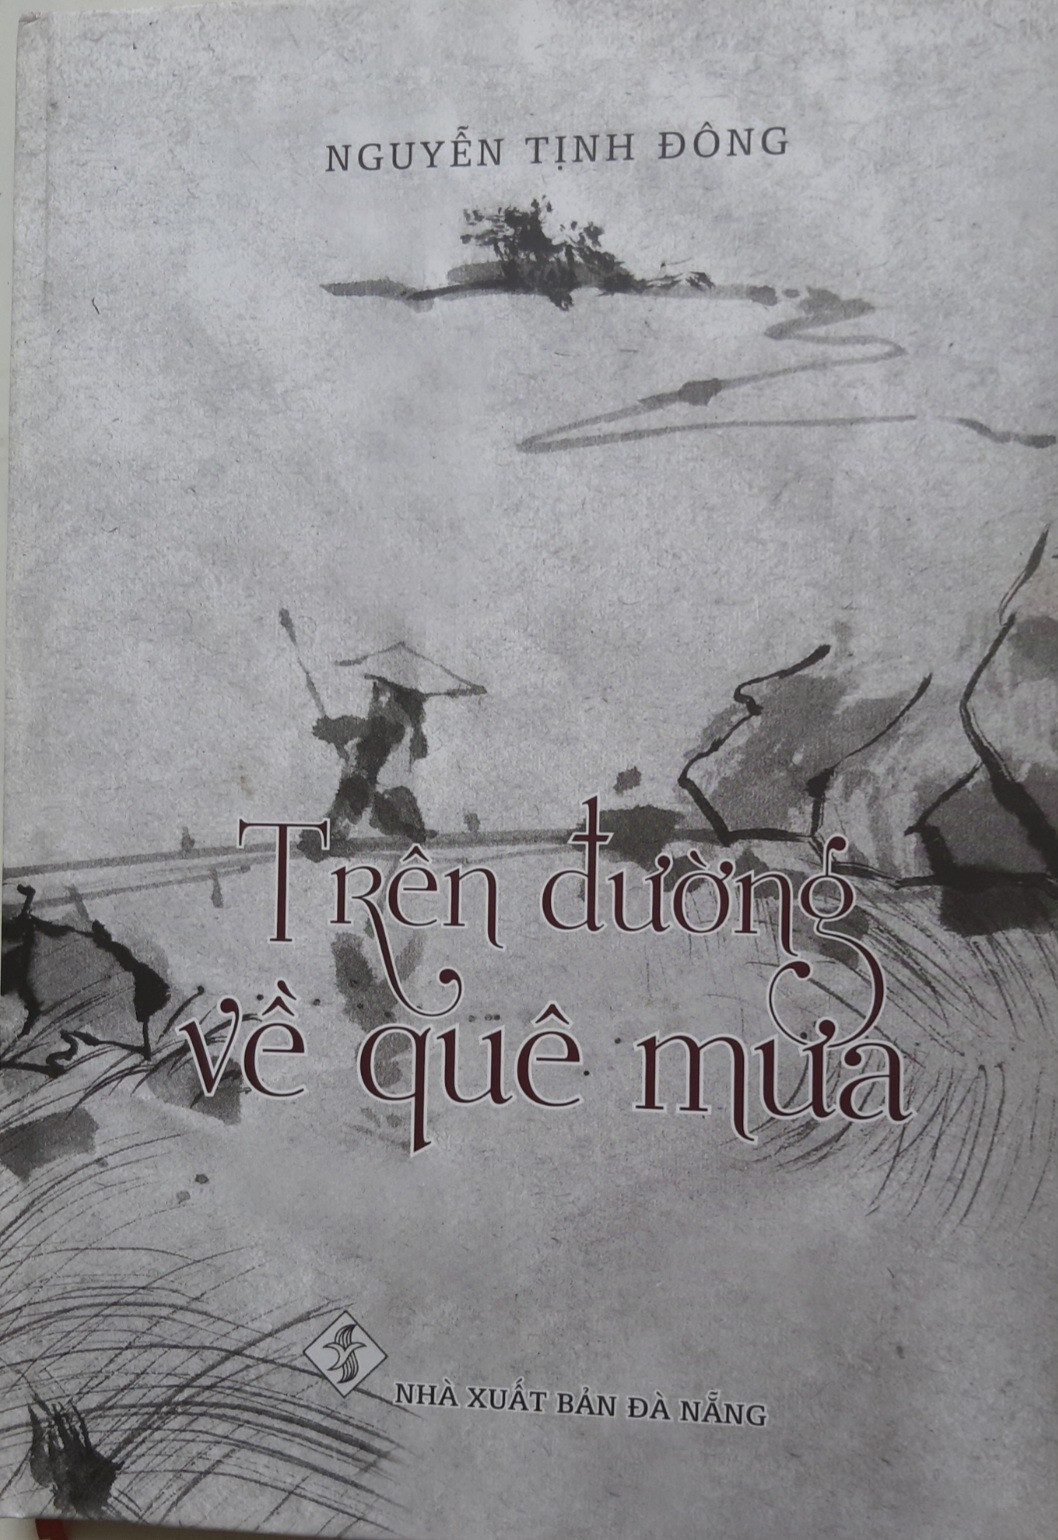 Tập thơ “Trên đường về quê mưa” của Nguyễn Tịnh Đông